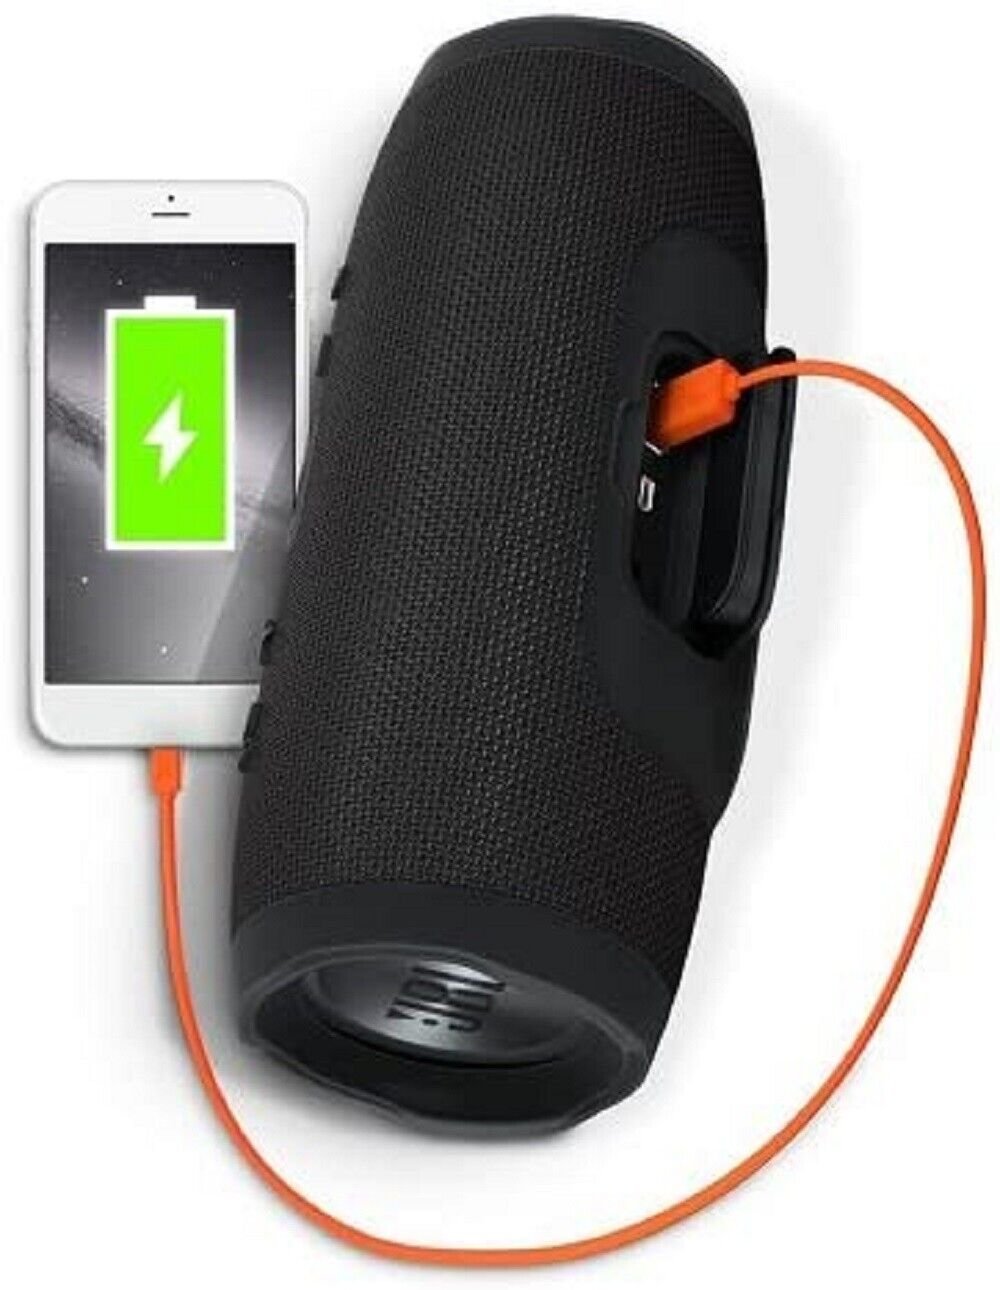 JBL Charge 3 Waterproof Portable Wireless Bluetooth Speaker | eBay